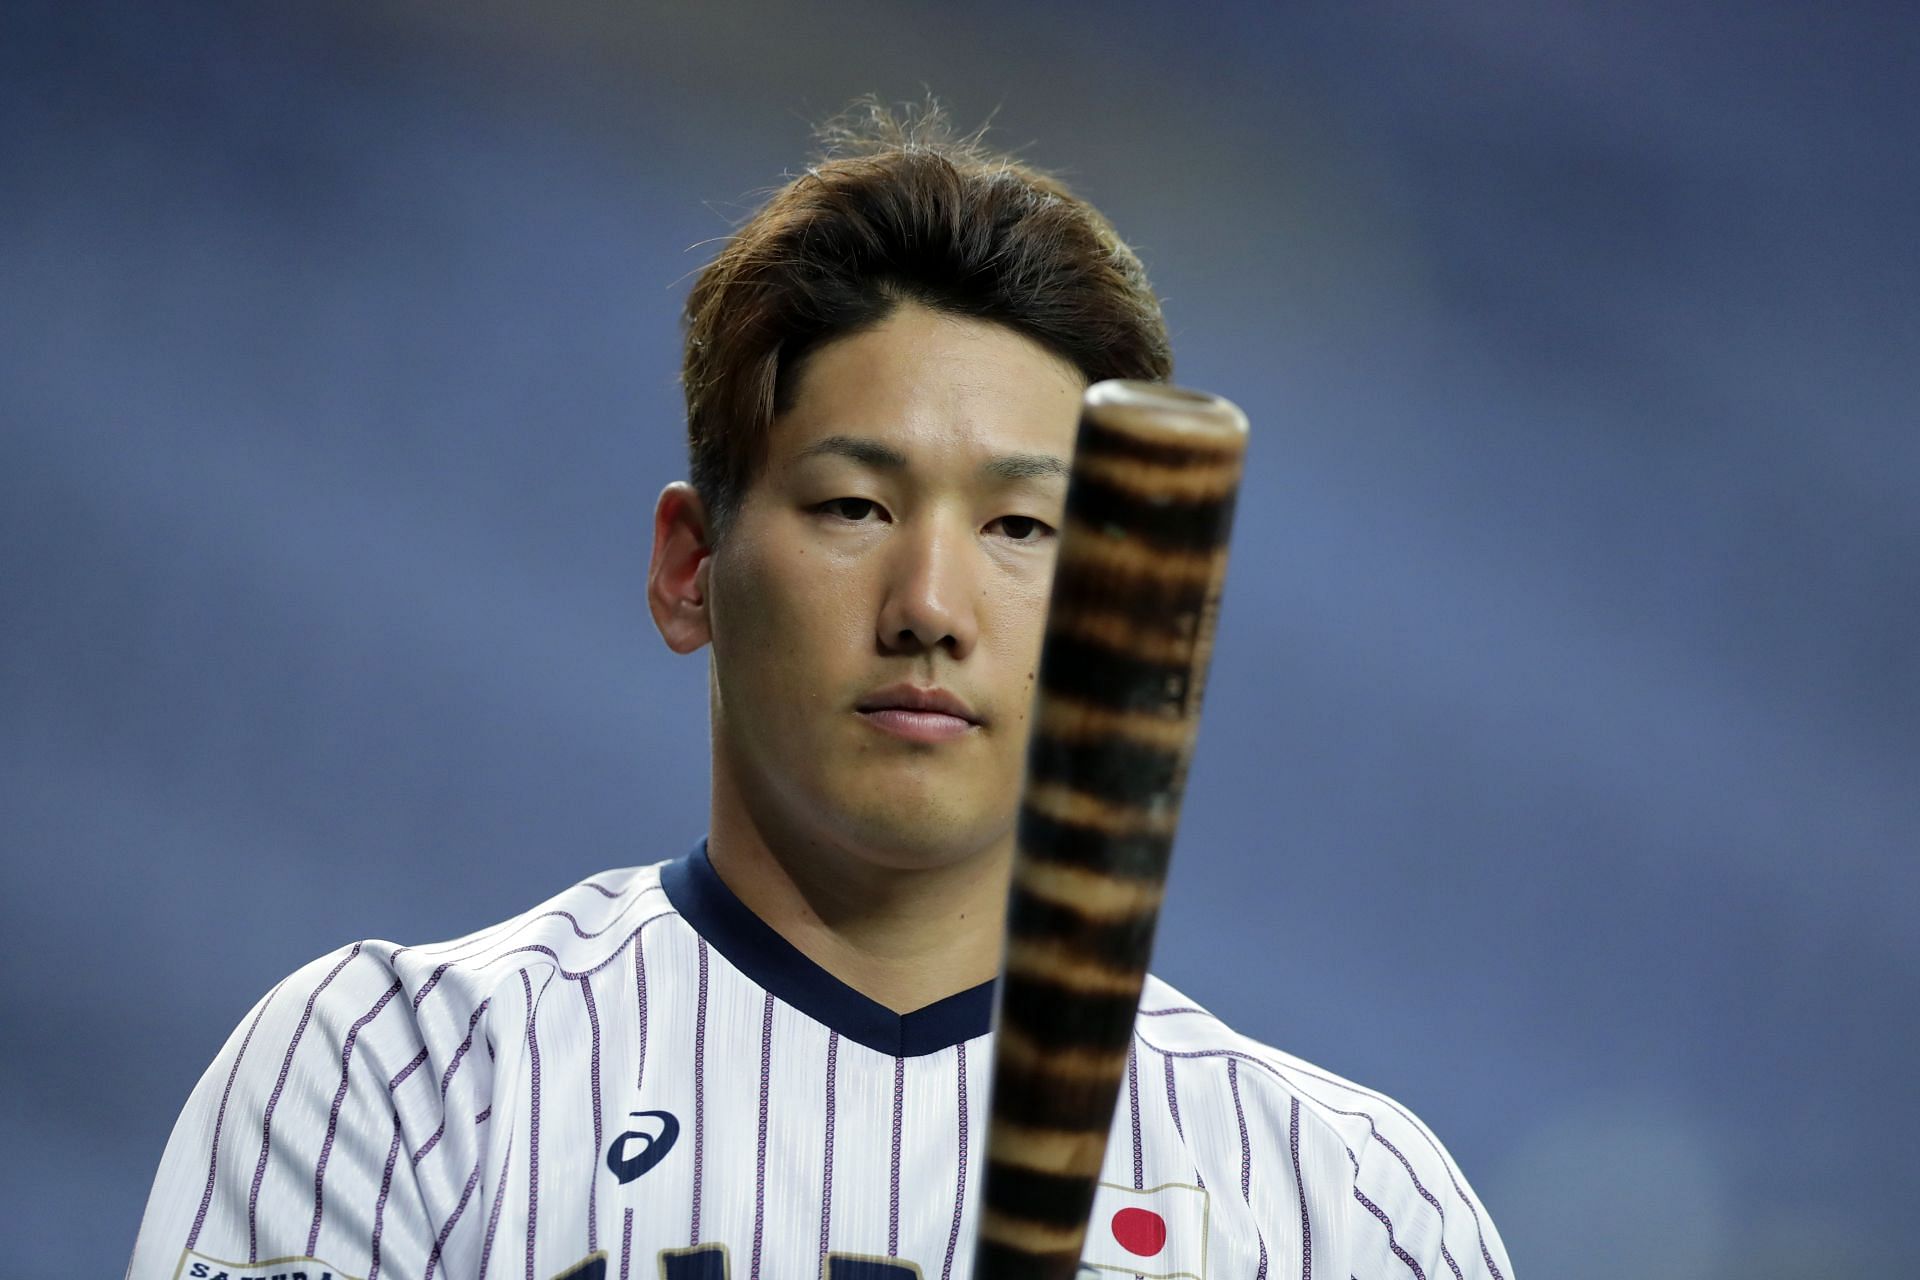 MLB: Masataka Yoshida hits go-ahead single in 8th as Red Sox rally past  White Sox 3-2 - The Mainichi